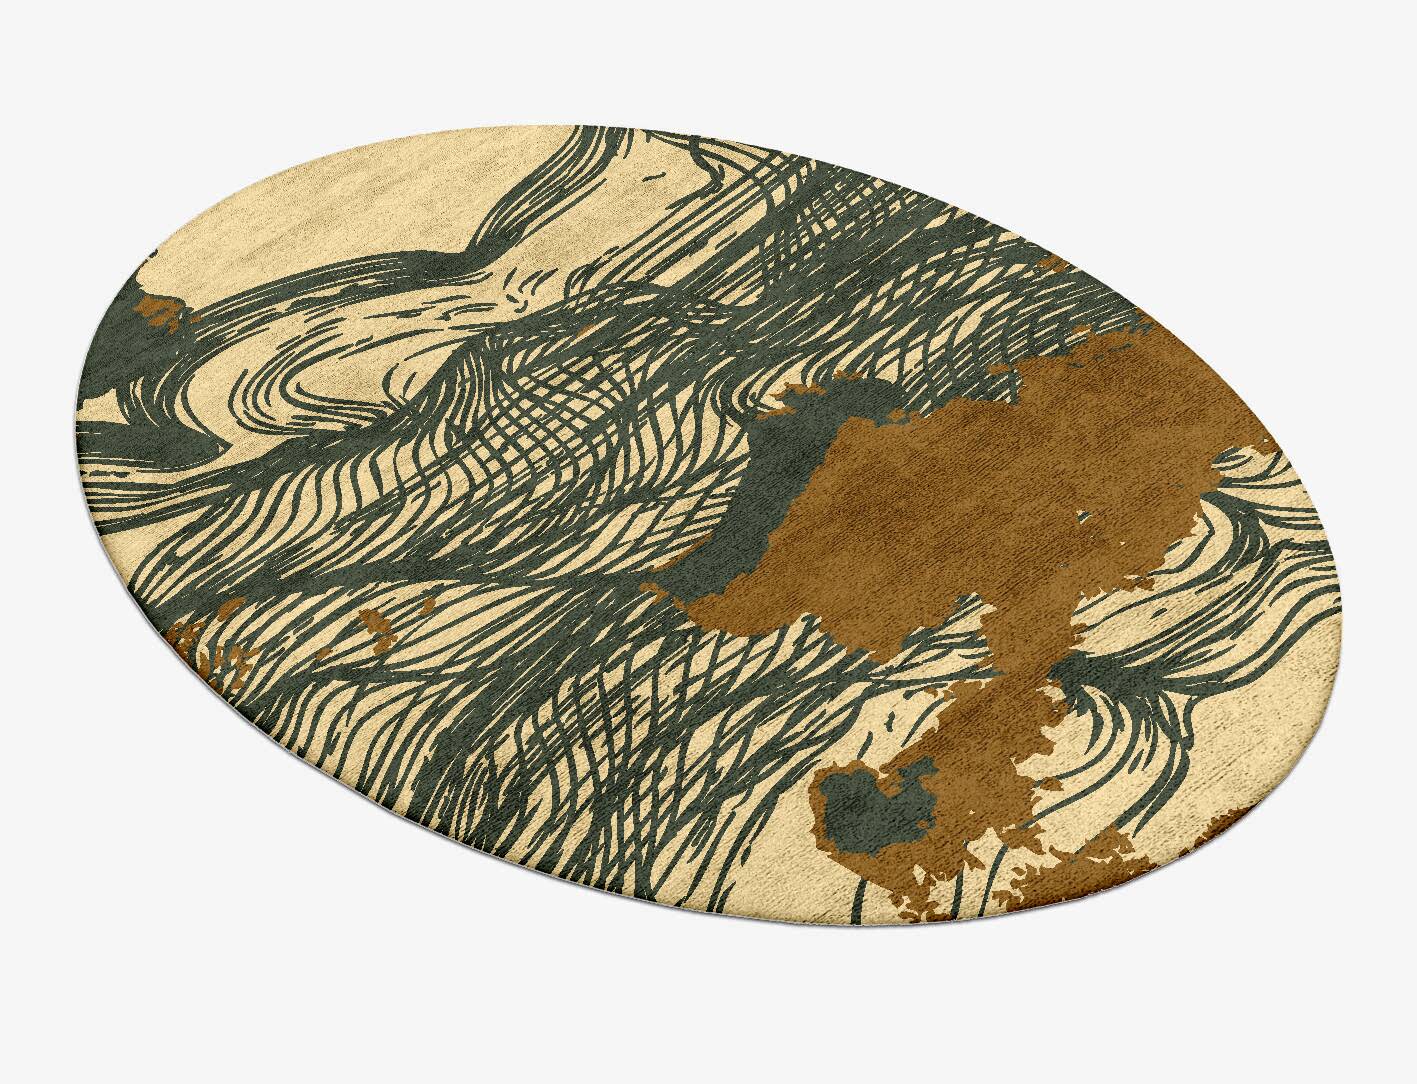 Zephyr Abstract Oval Hand Tufted Bamboo Silk Custom Rug by Rug Artisan